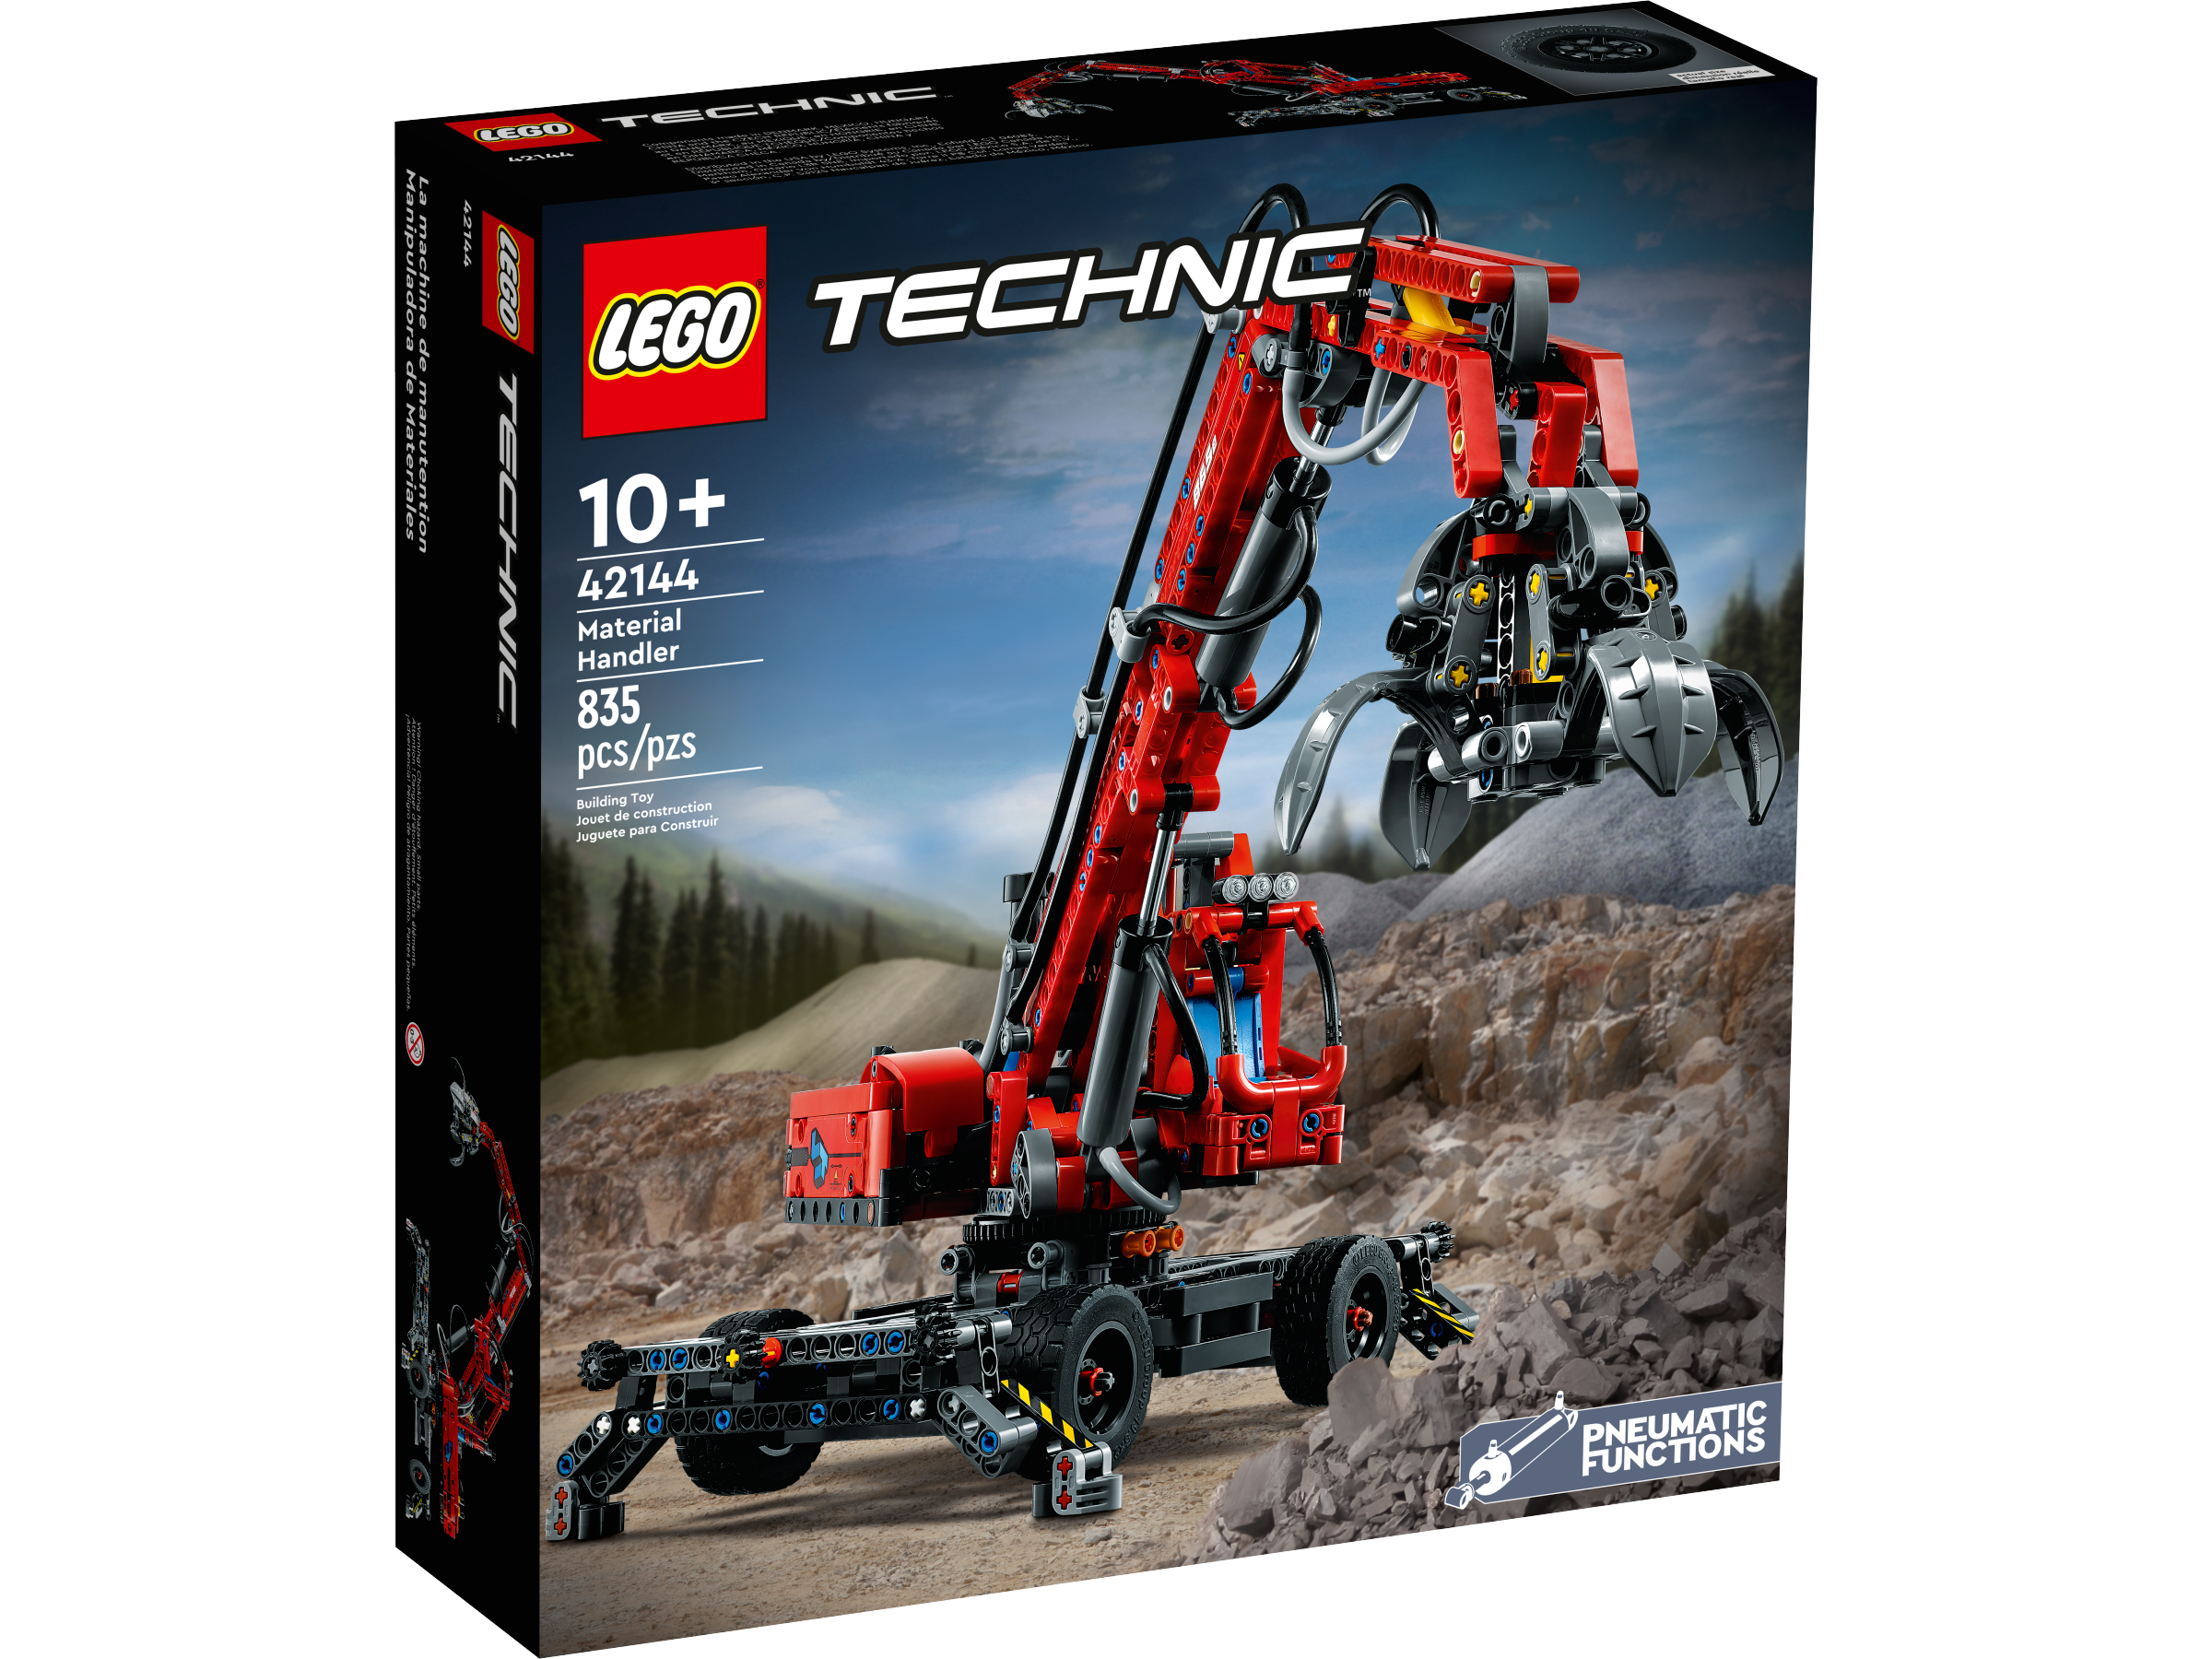 aanraken Belastingen Woning Overslagkraan 42144 | Technic | Officiële LEGO® winkel NL